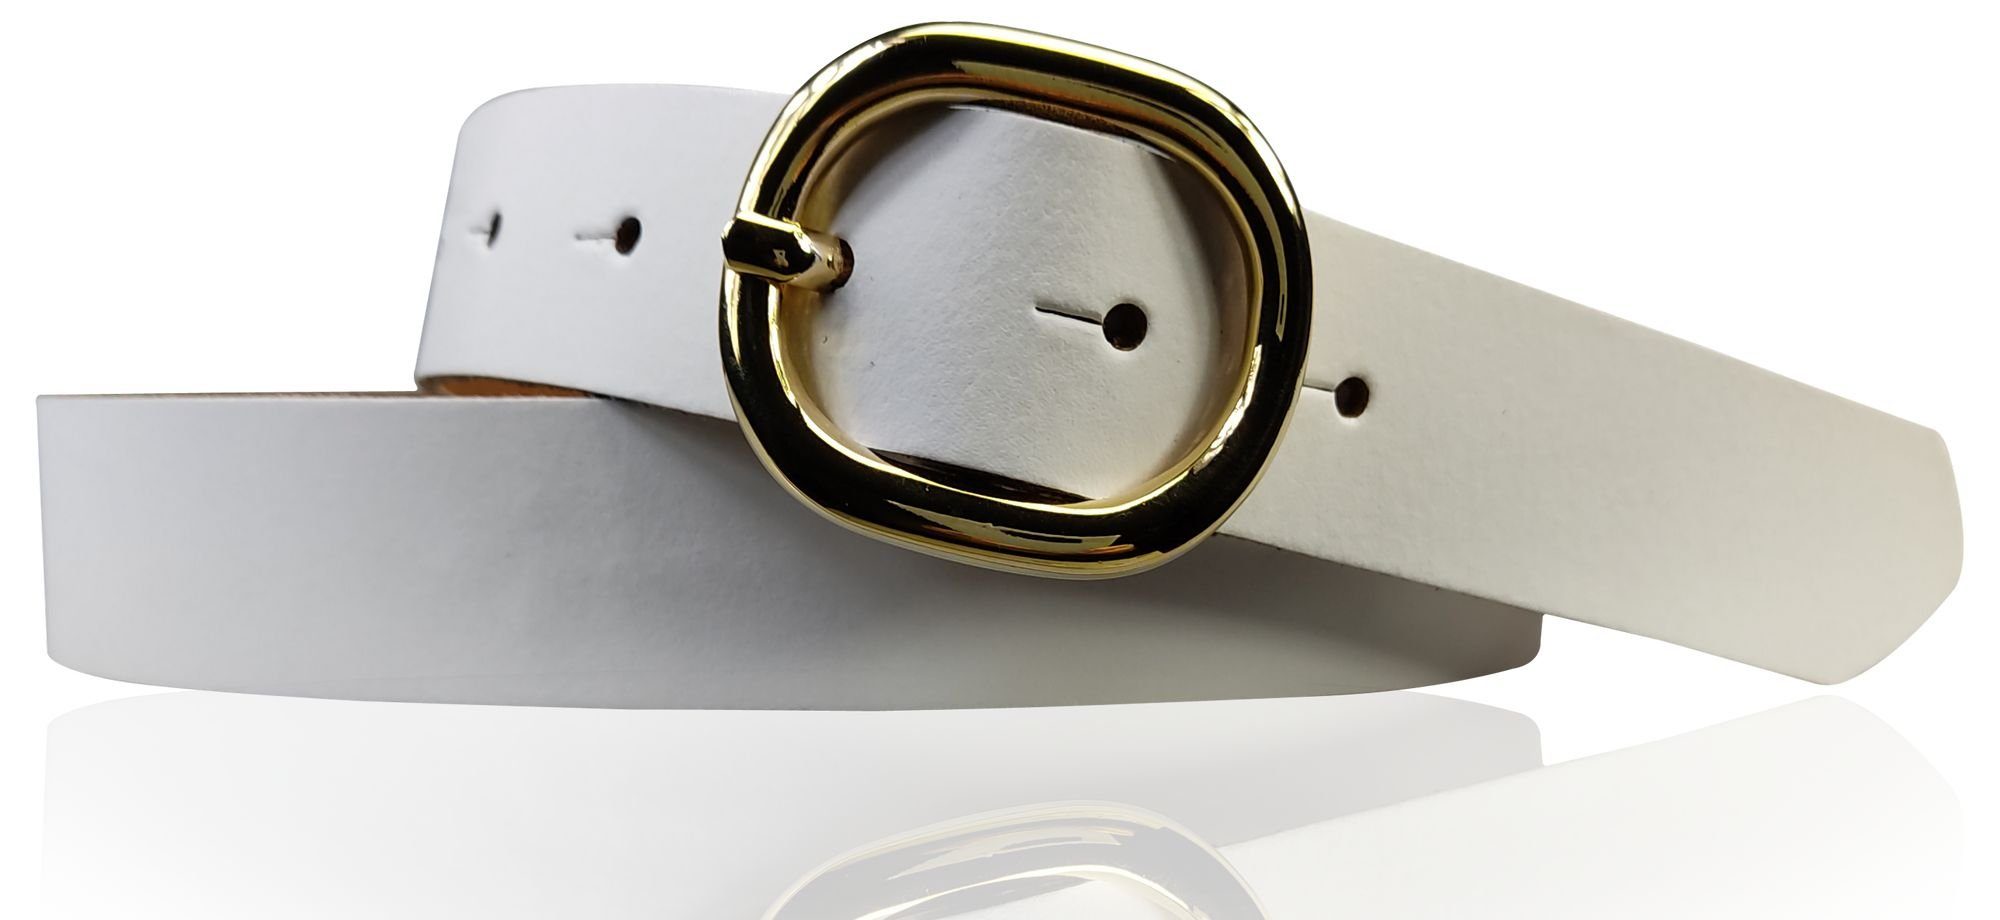 Ledergürtel ovale 18621 cm Weiß plastikfrei goldene Hüftgürtel FRONHOFER 3 Schnalle, echt Damengürtel